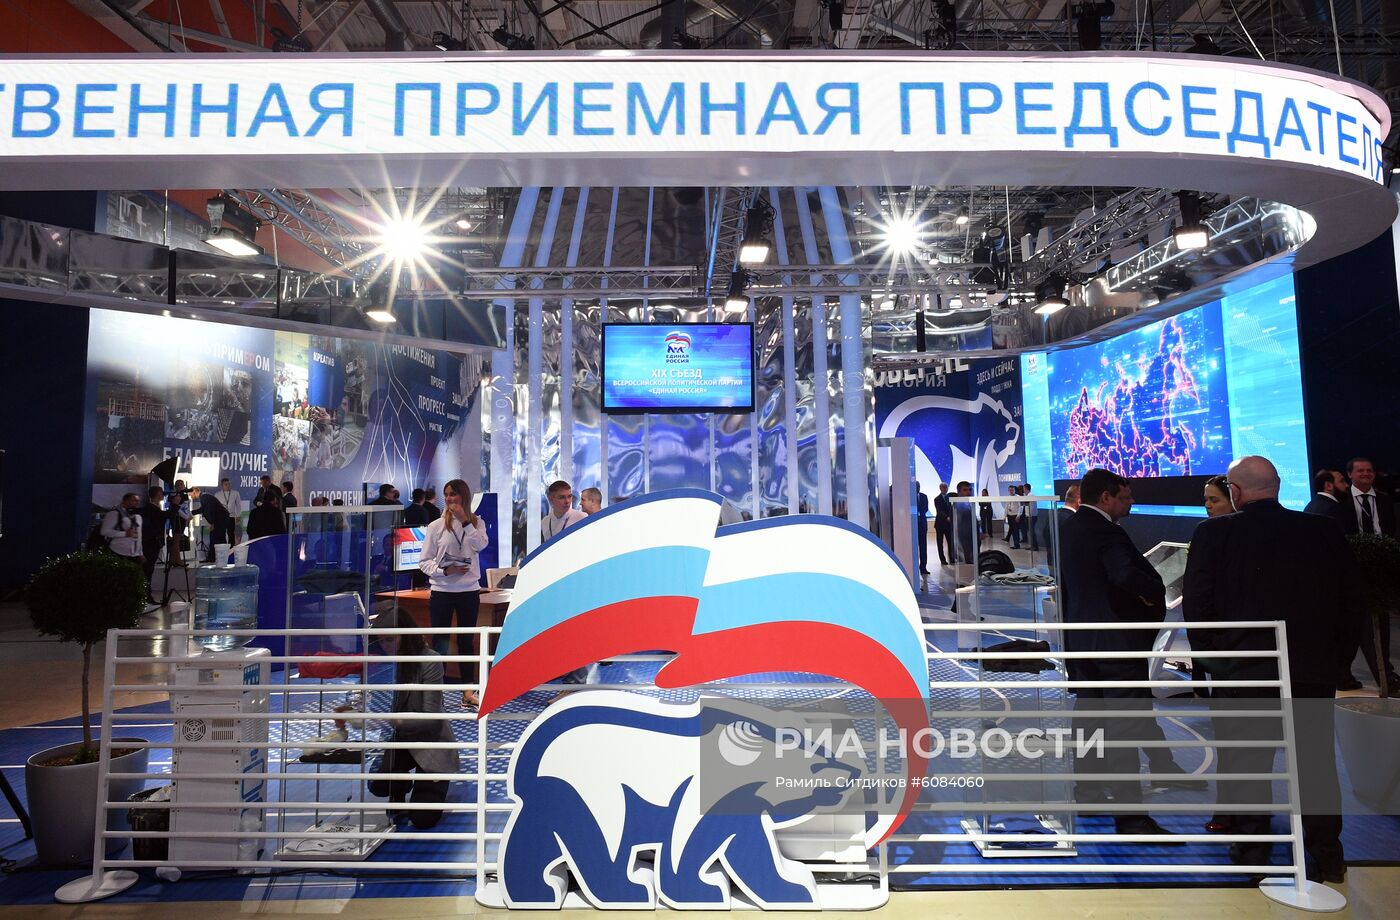 XIX съезд партии "Единая Россия" 